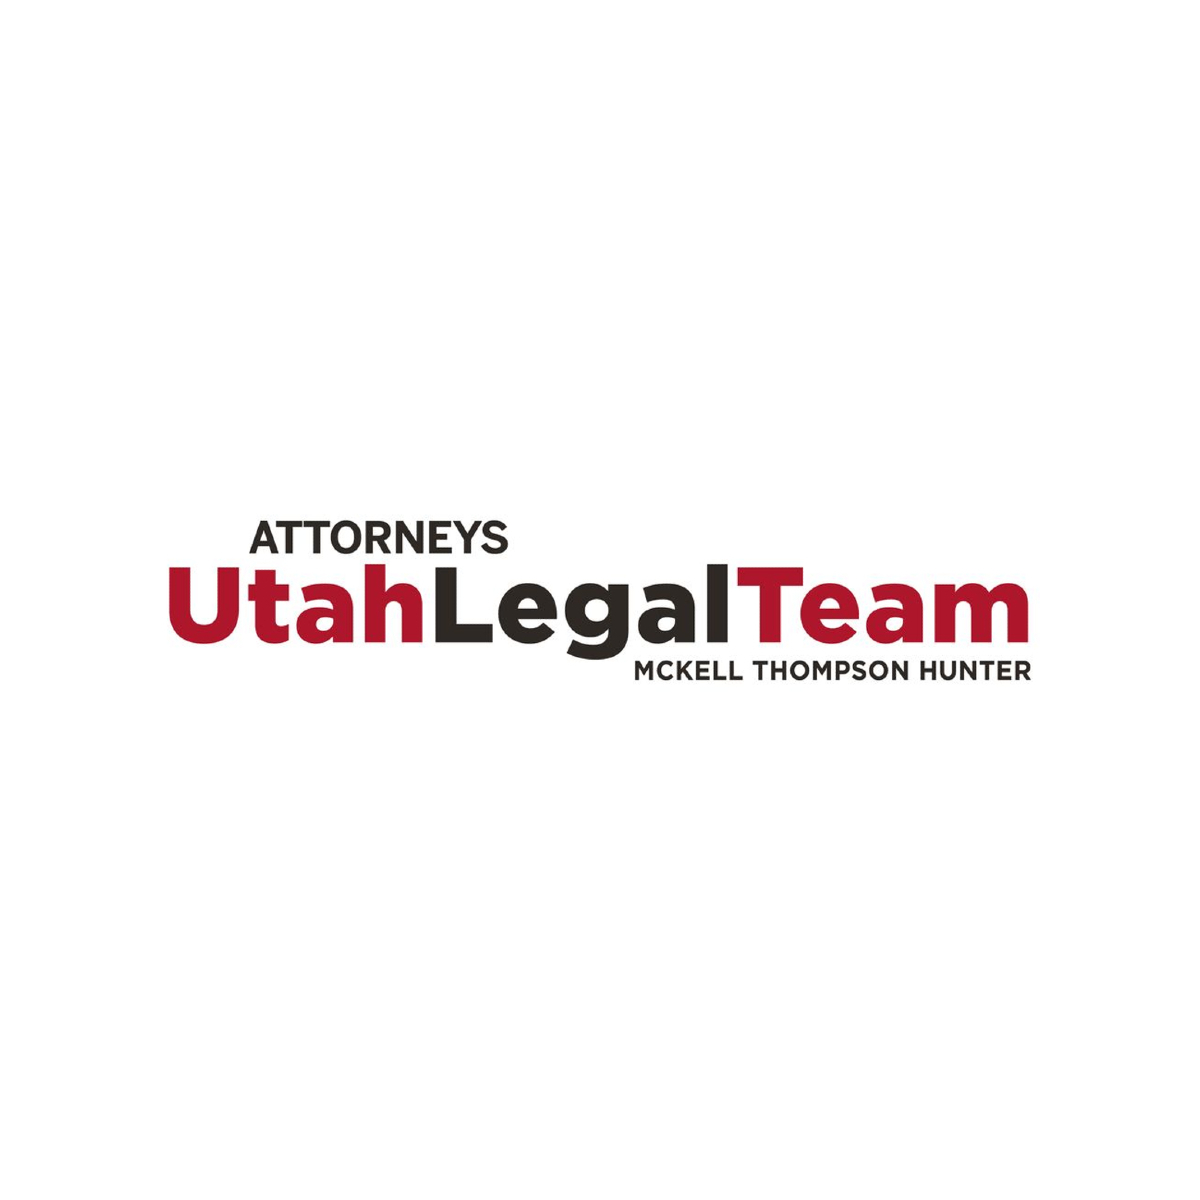 Utah Legal Team